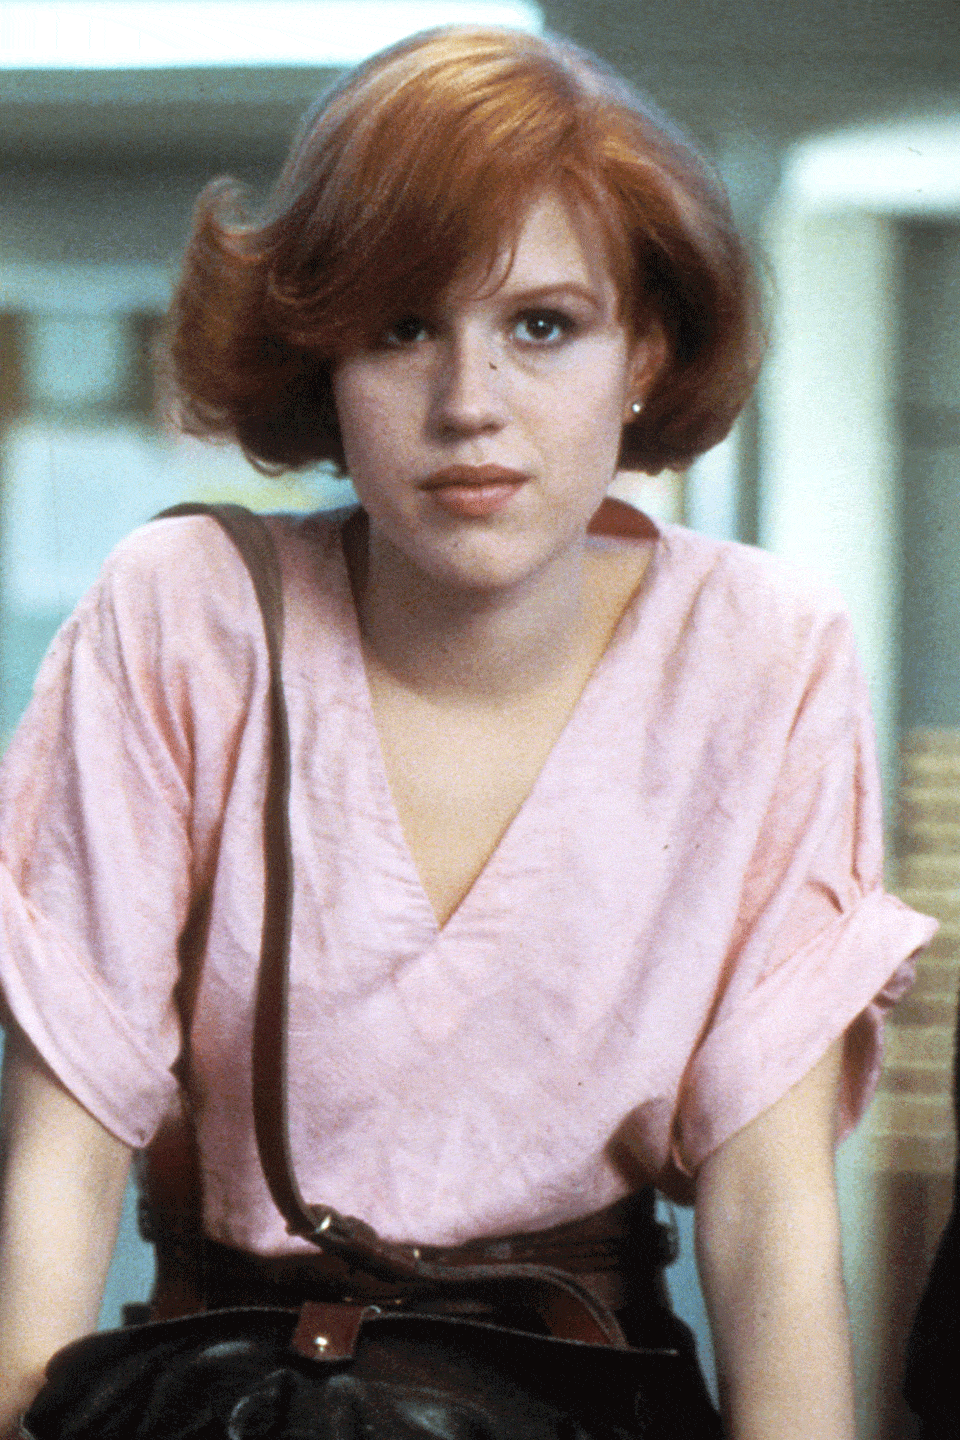 1985: Molly Ringwald